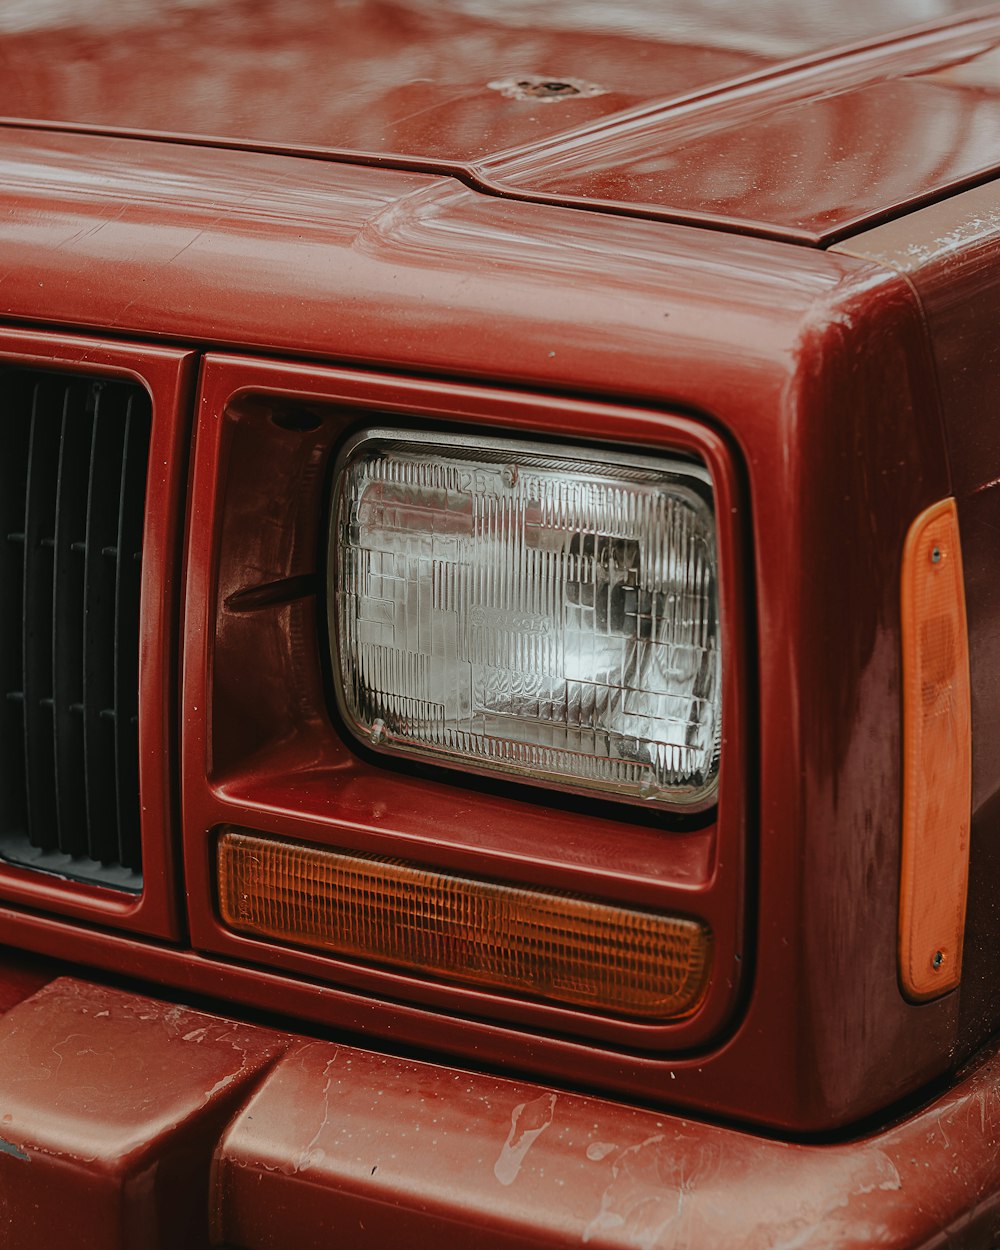 um close up da extremidade dianteira de um caminhão vermelho